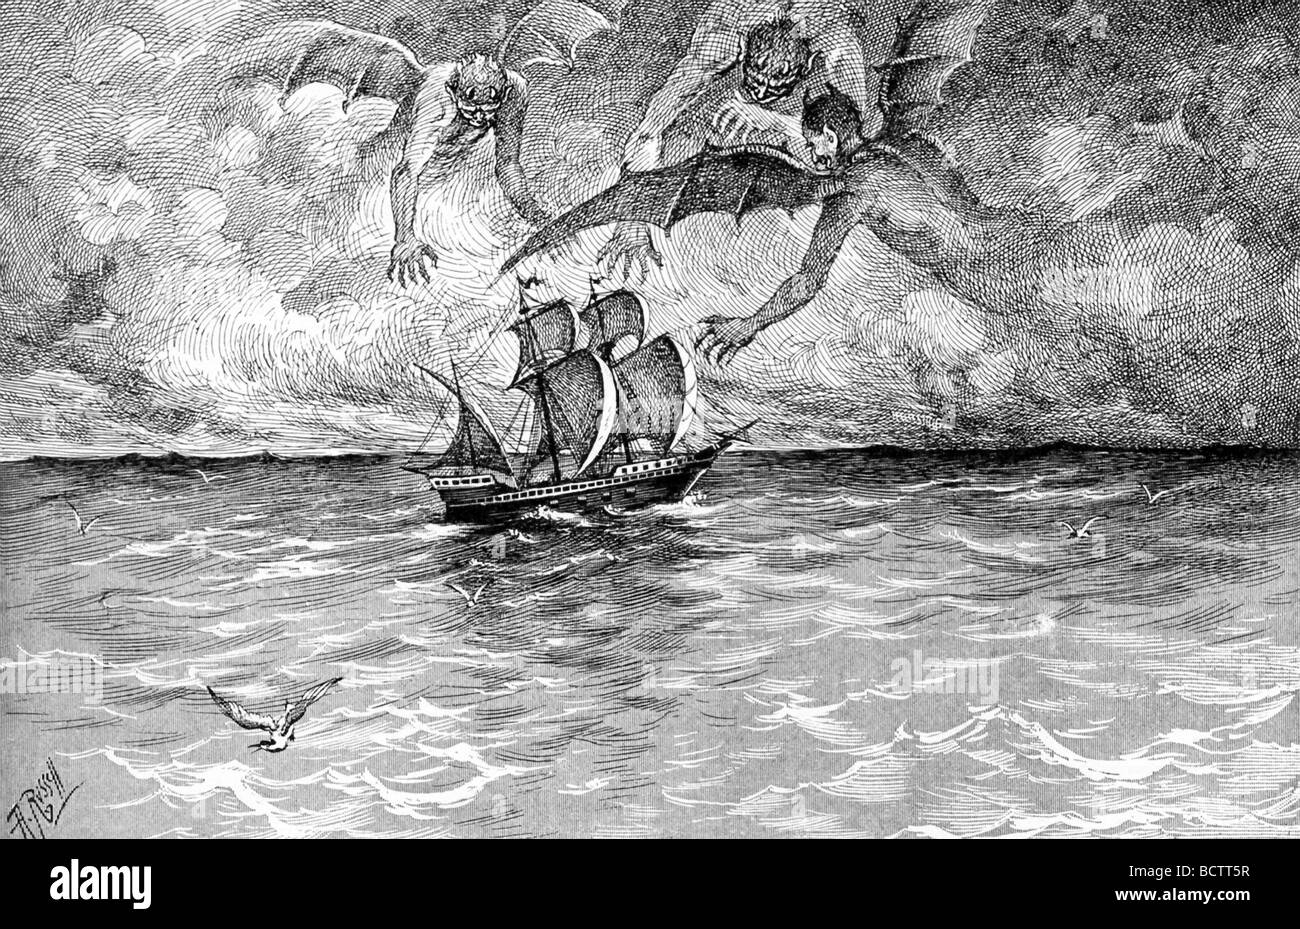 Cette illustration 1891 est une représentation fantaisiste de trois démons tempête à propos de nab un navire voile dans les eaux libres. Banque D'Images